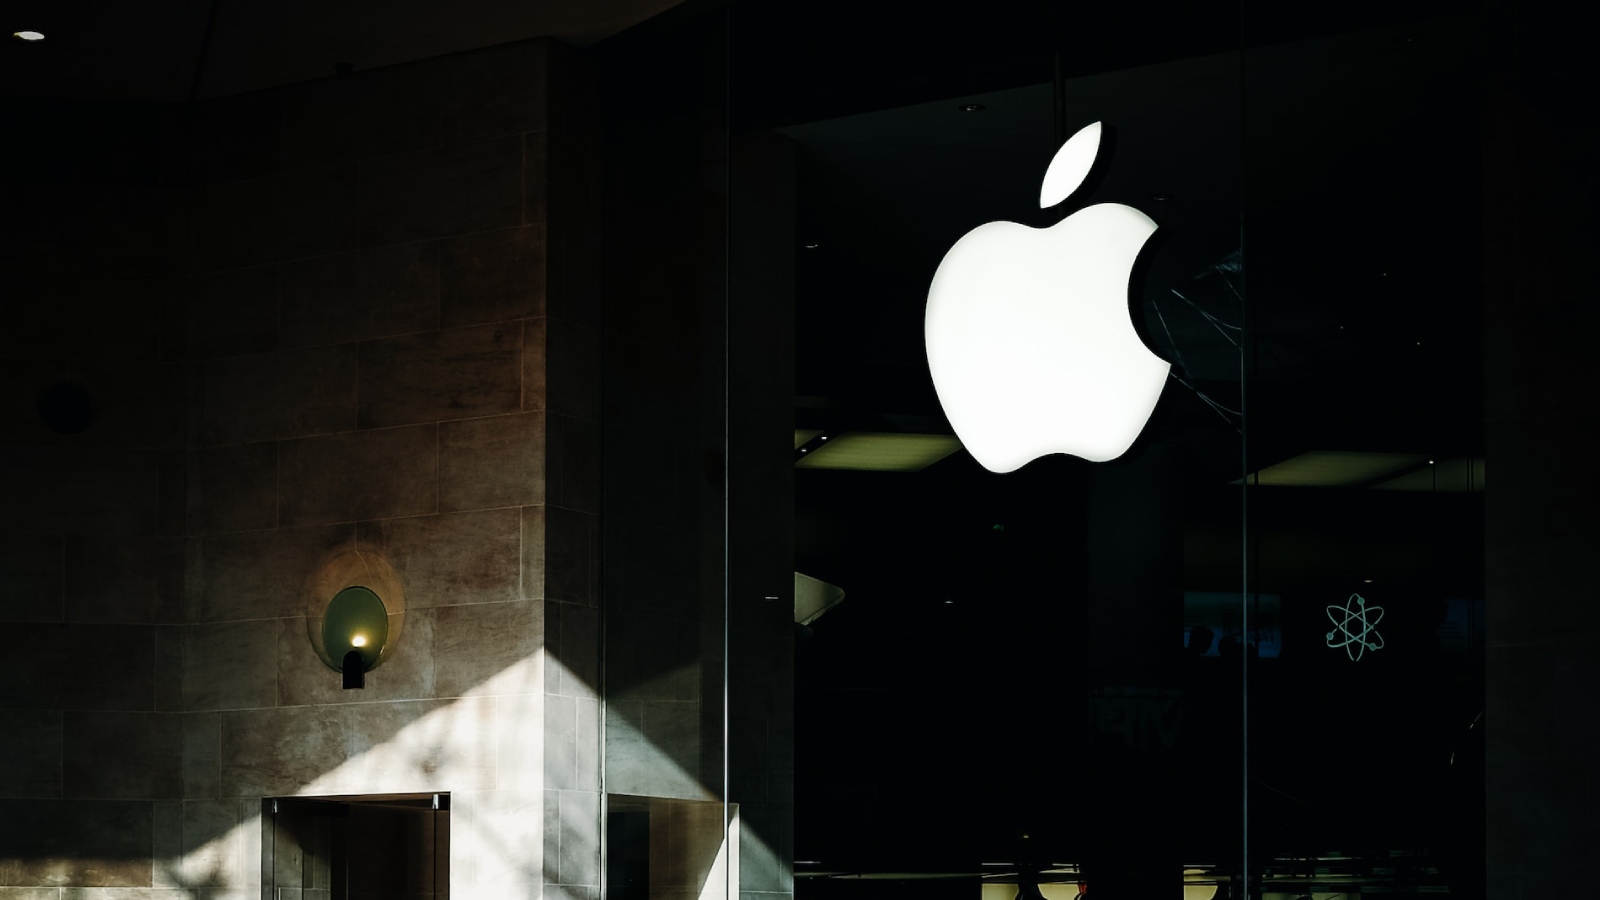 Sunny Optical станет потенциальным поставщиком CCM для Apple к 2025 году